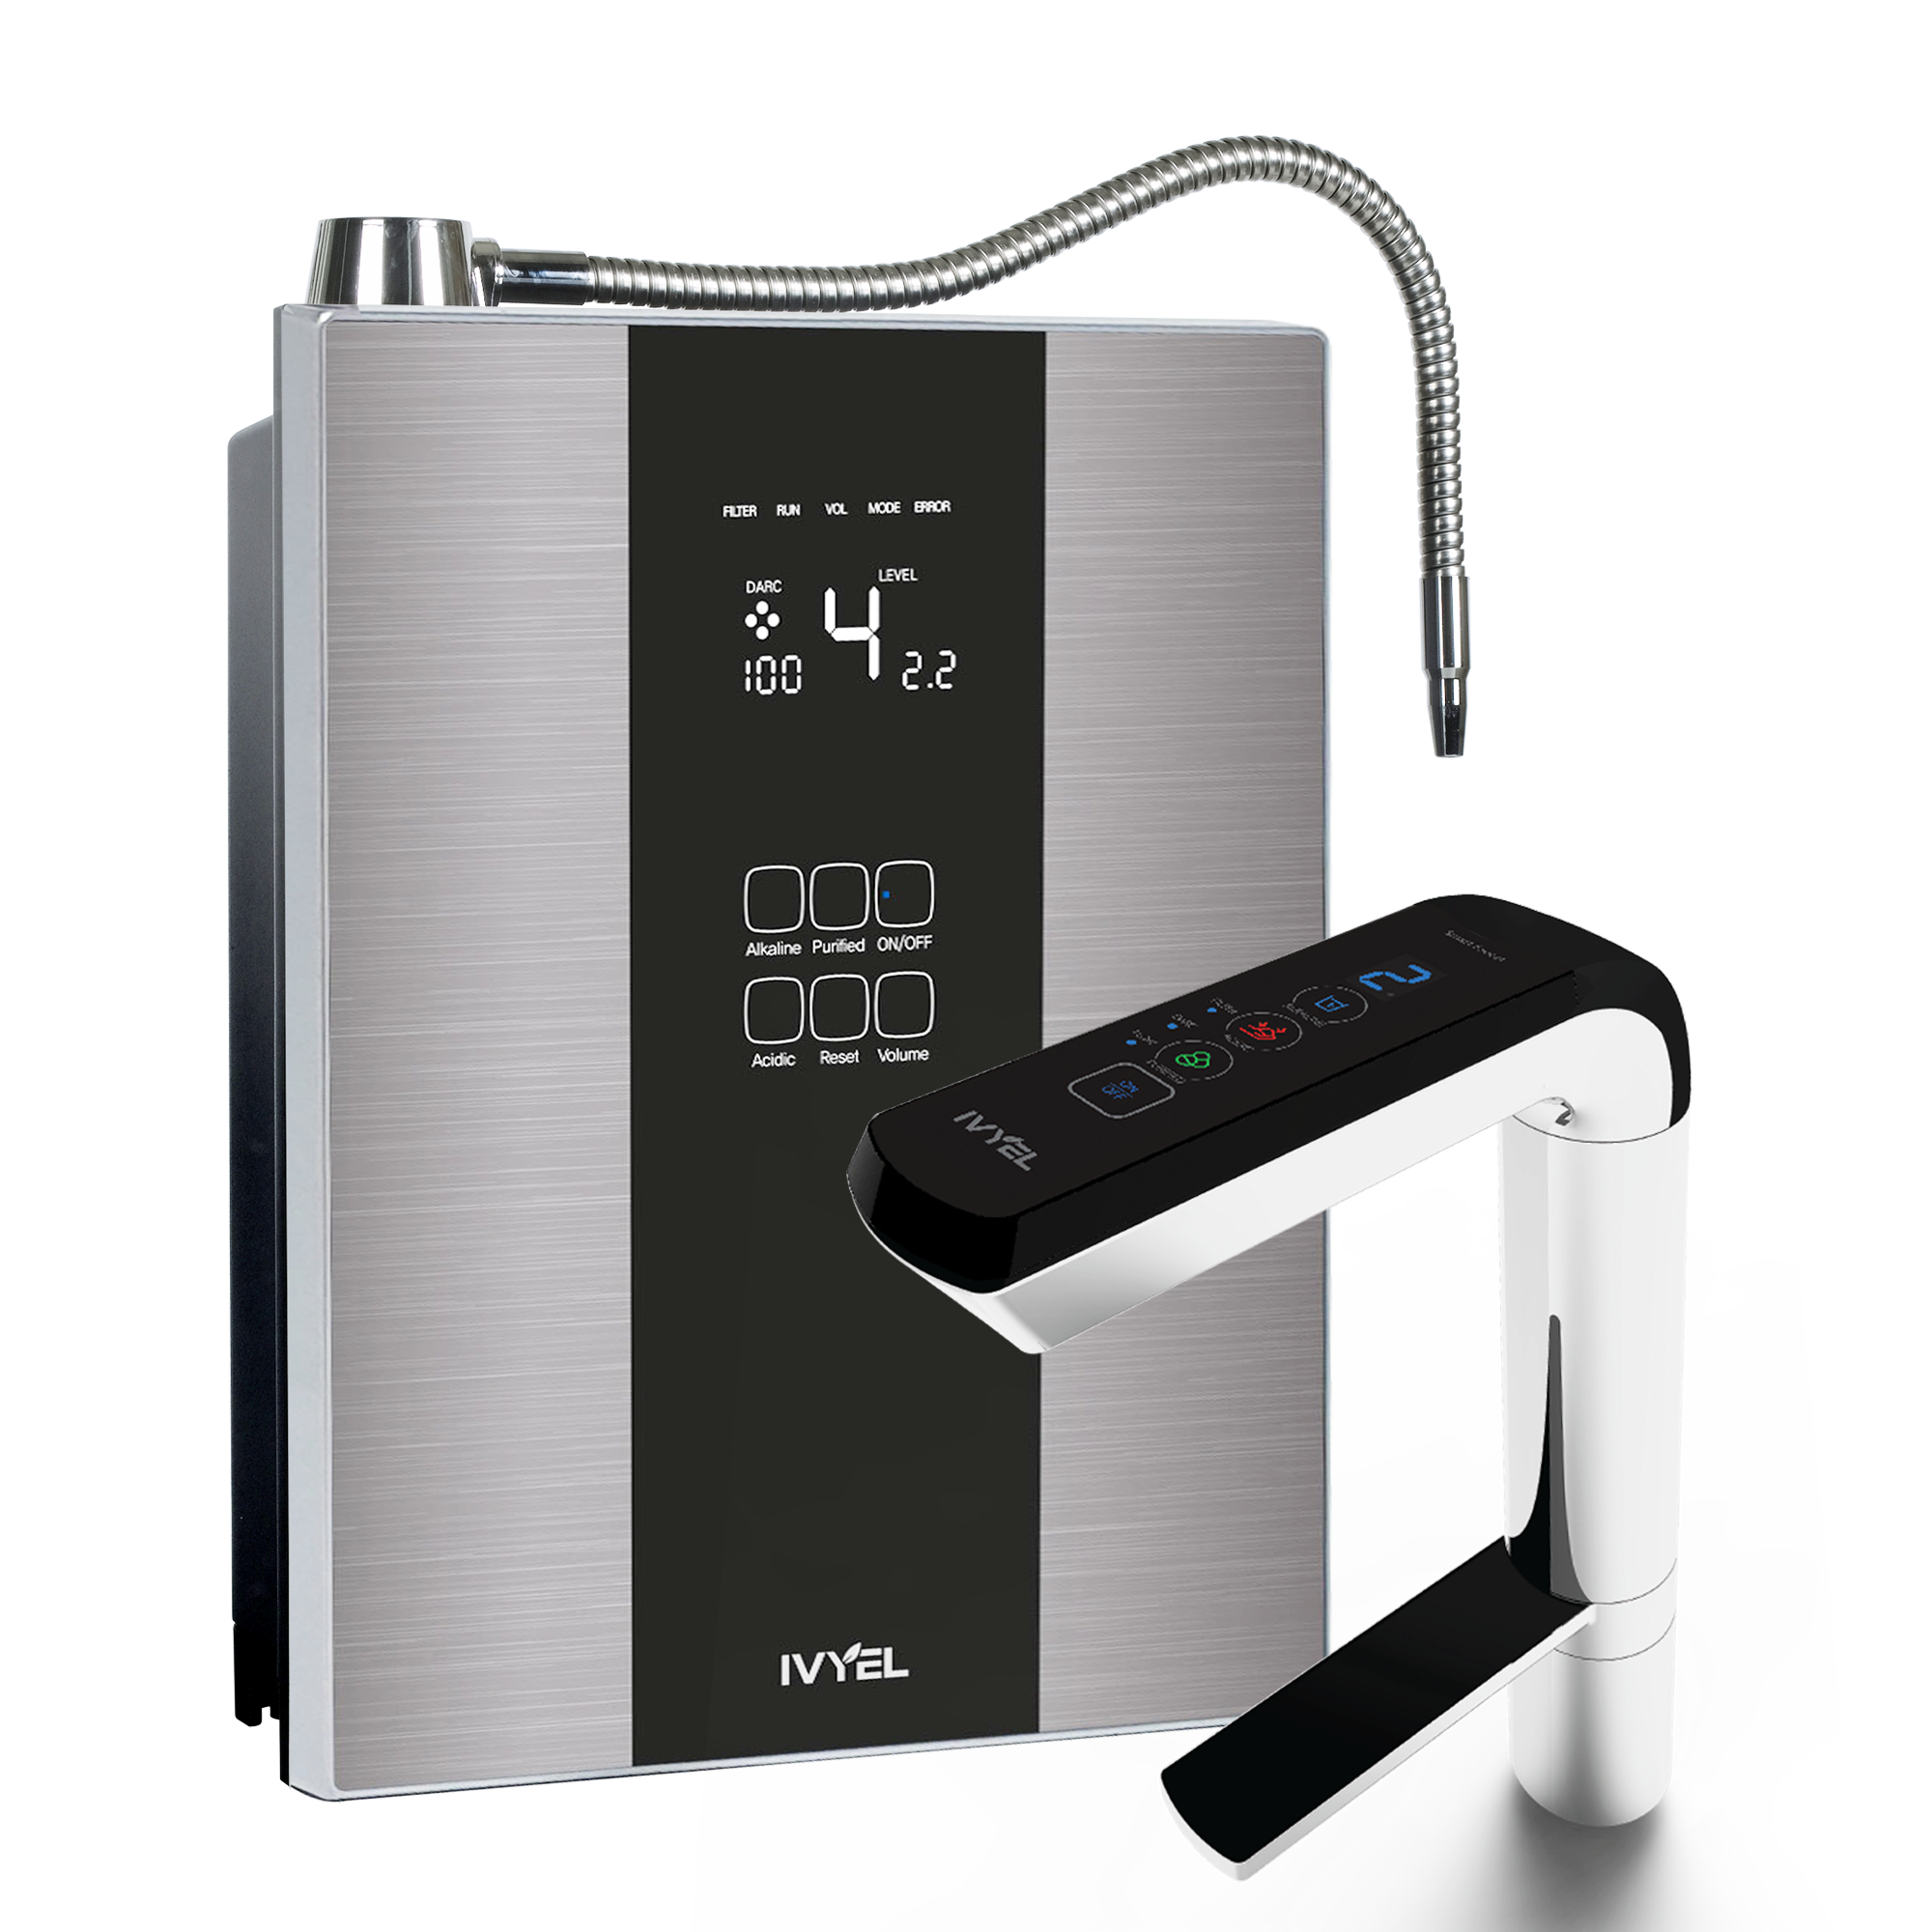 PL-MAX Ionizer Faucet